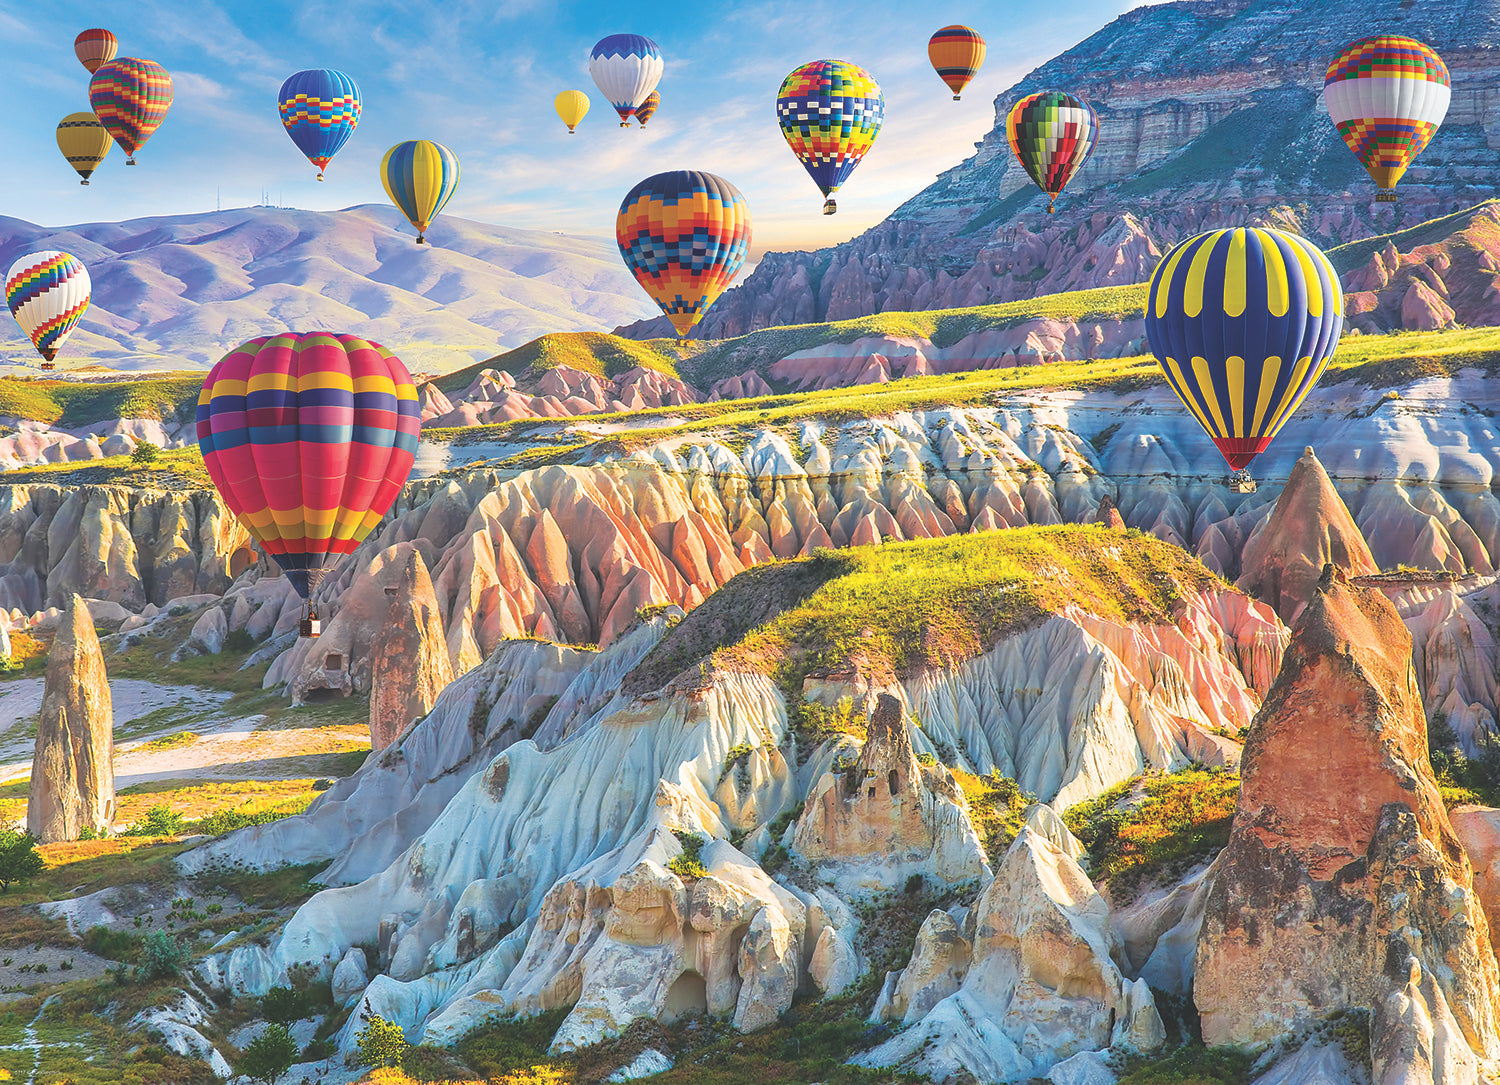 Air Balloons Over Cappadocia